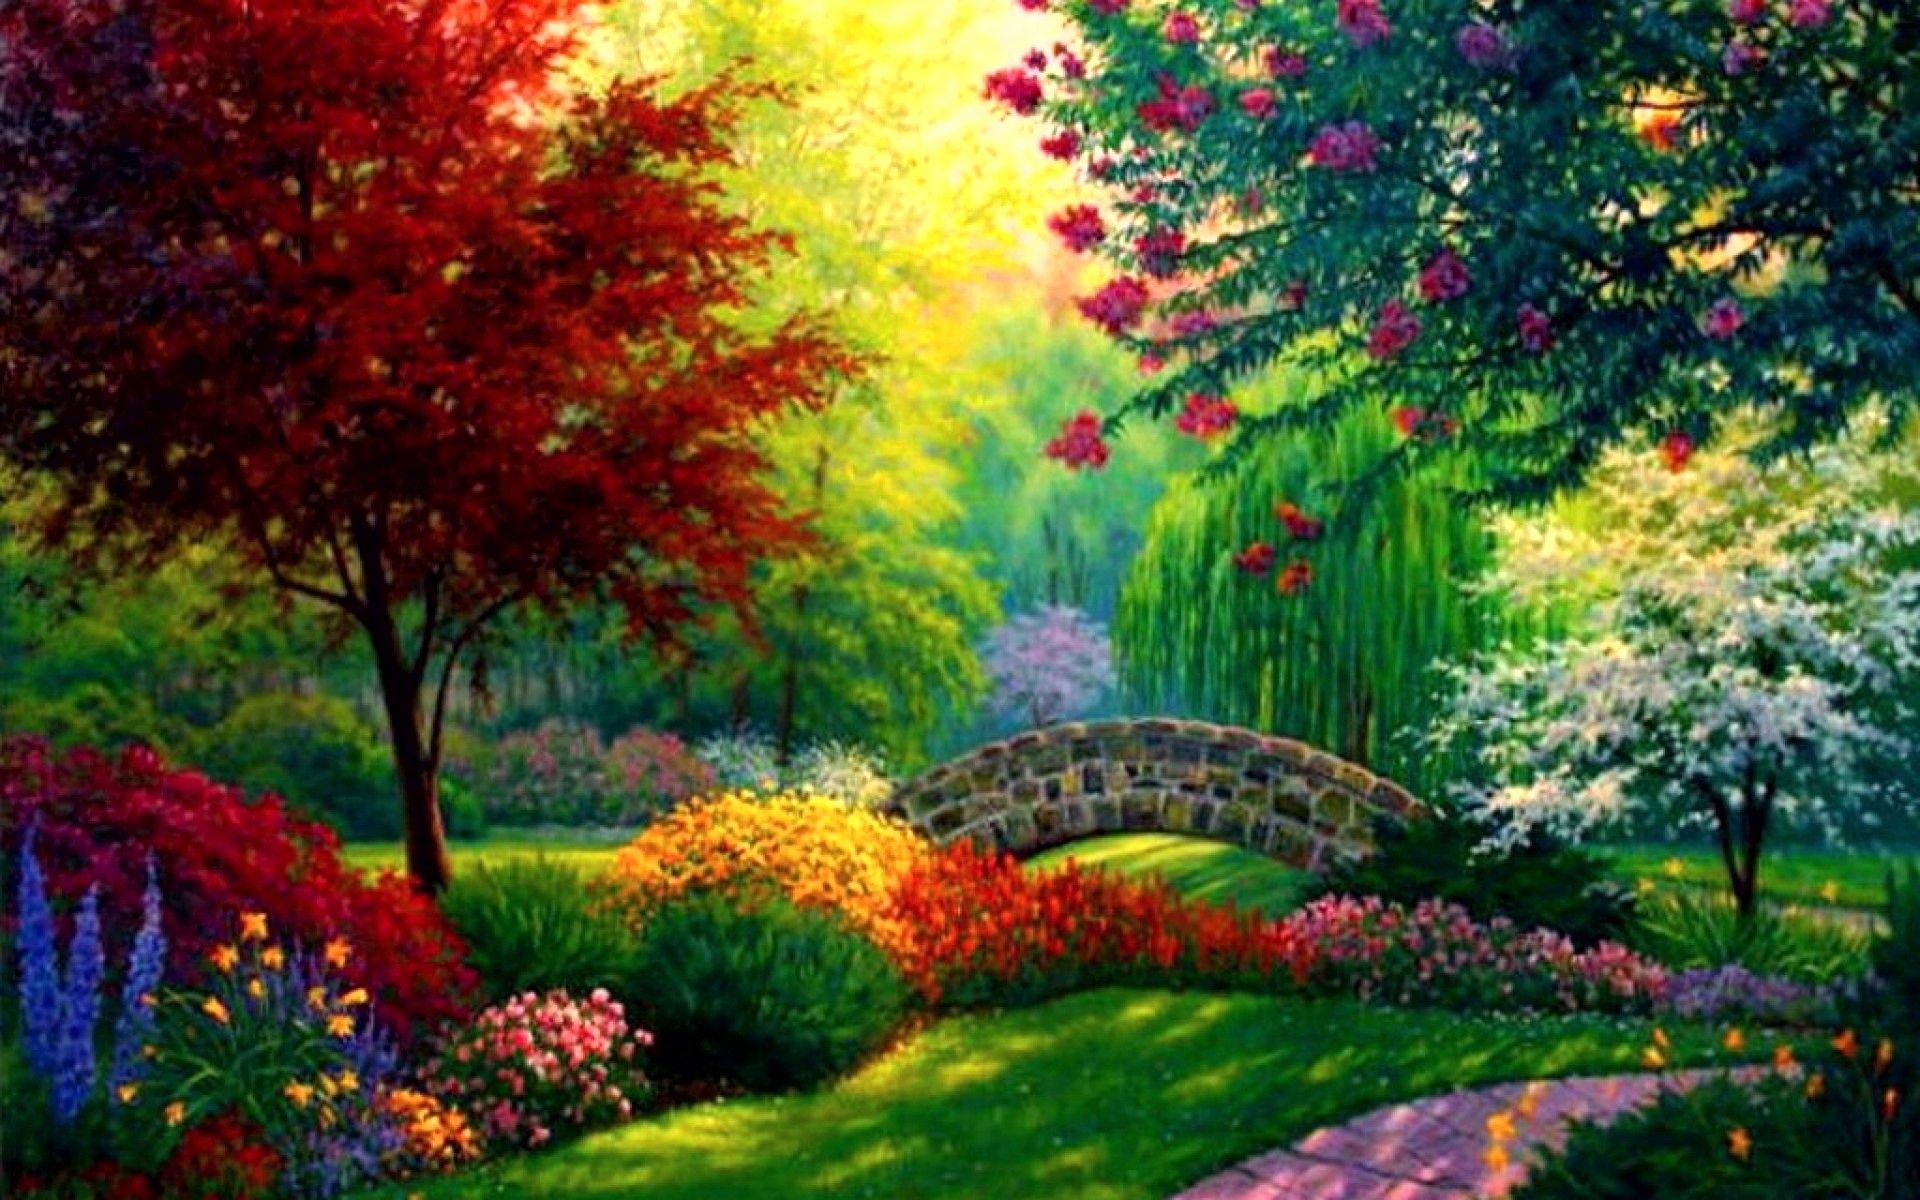 Bridge in Colorful Garden